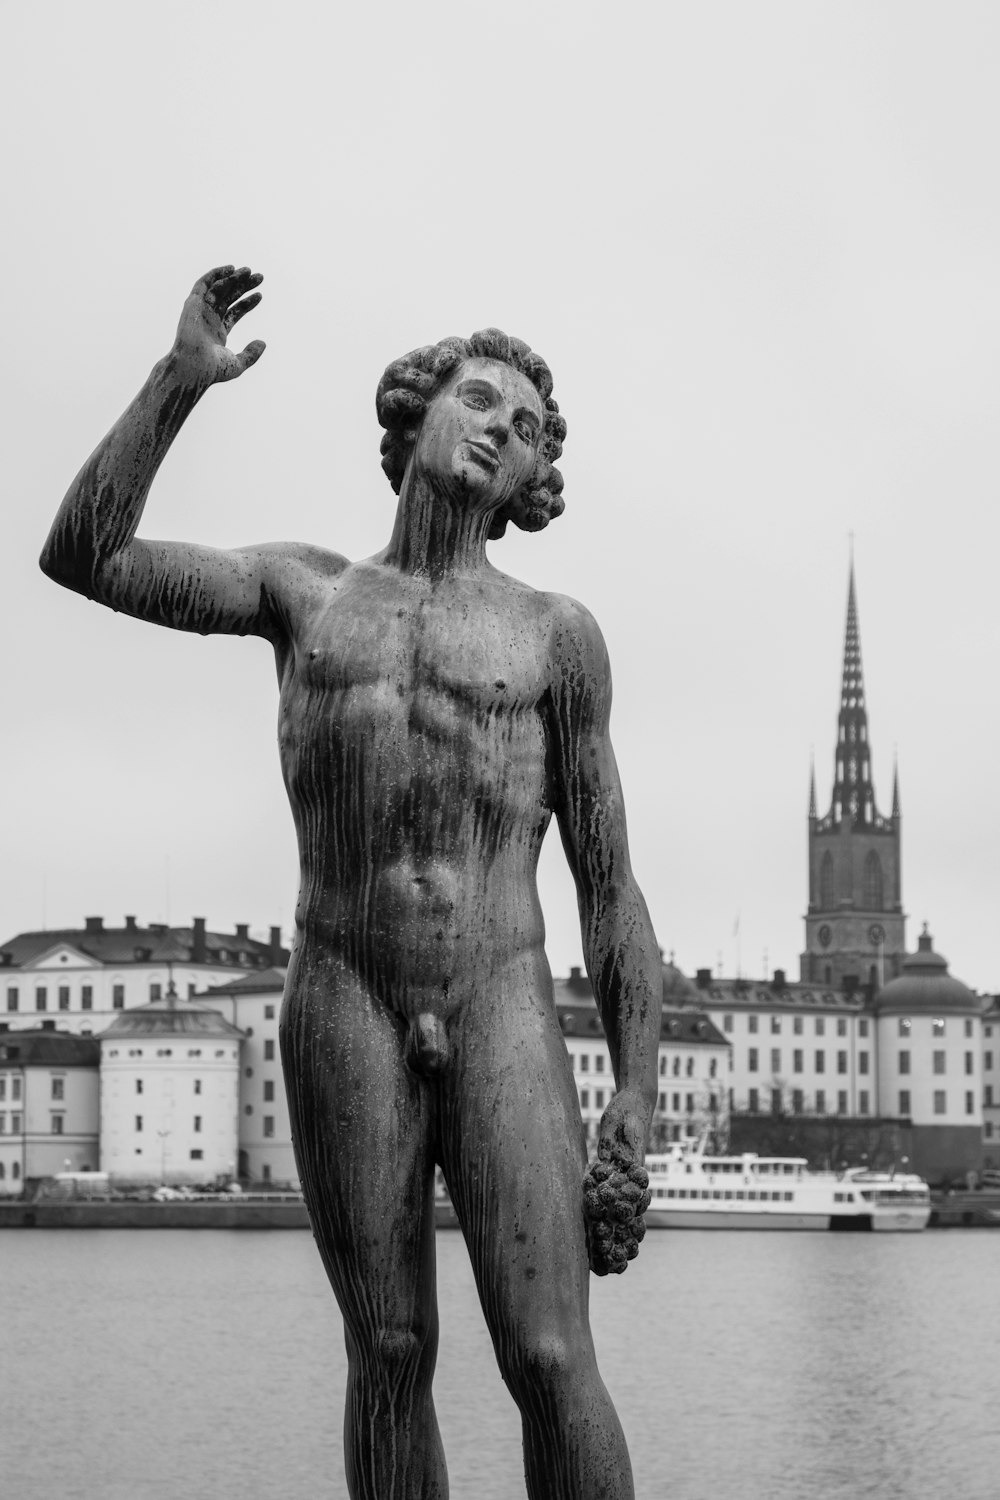 fotografia em tons de cinza da estátua do homem de topless